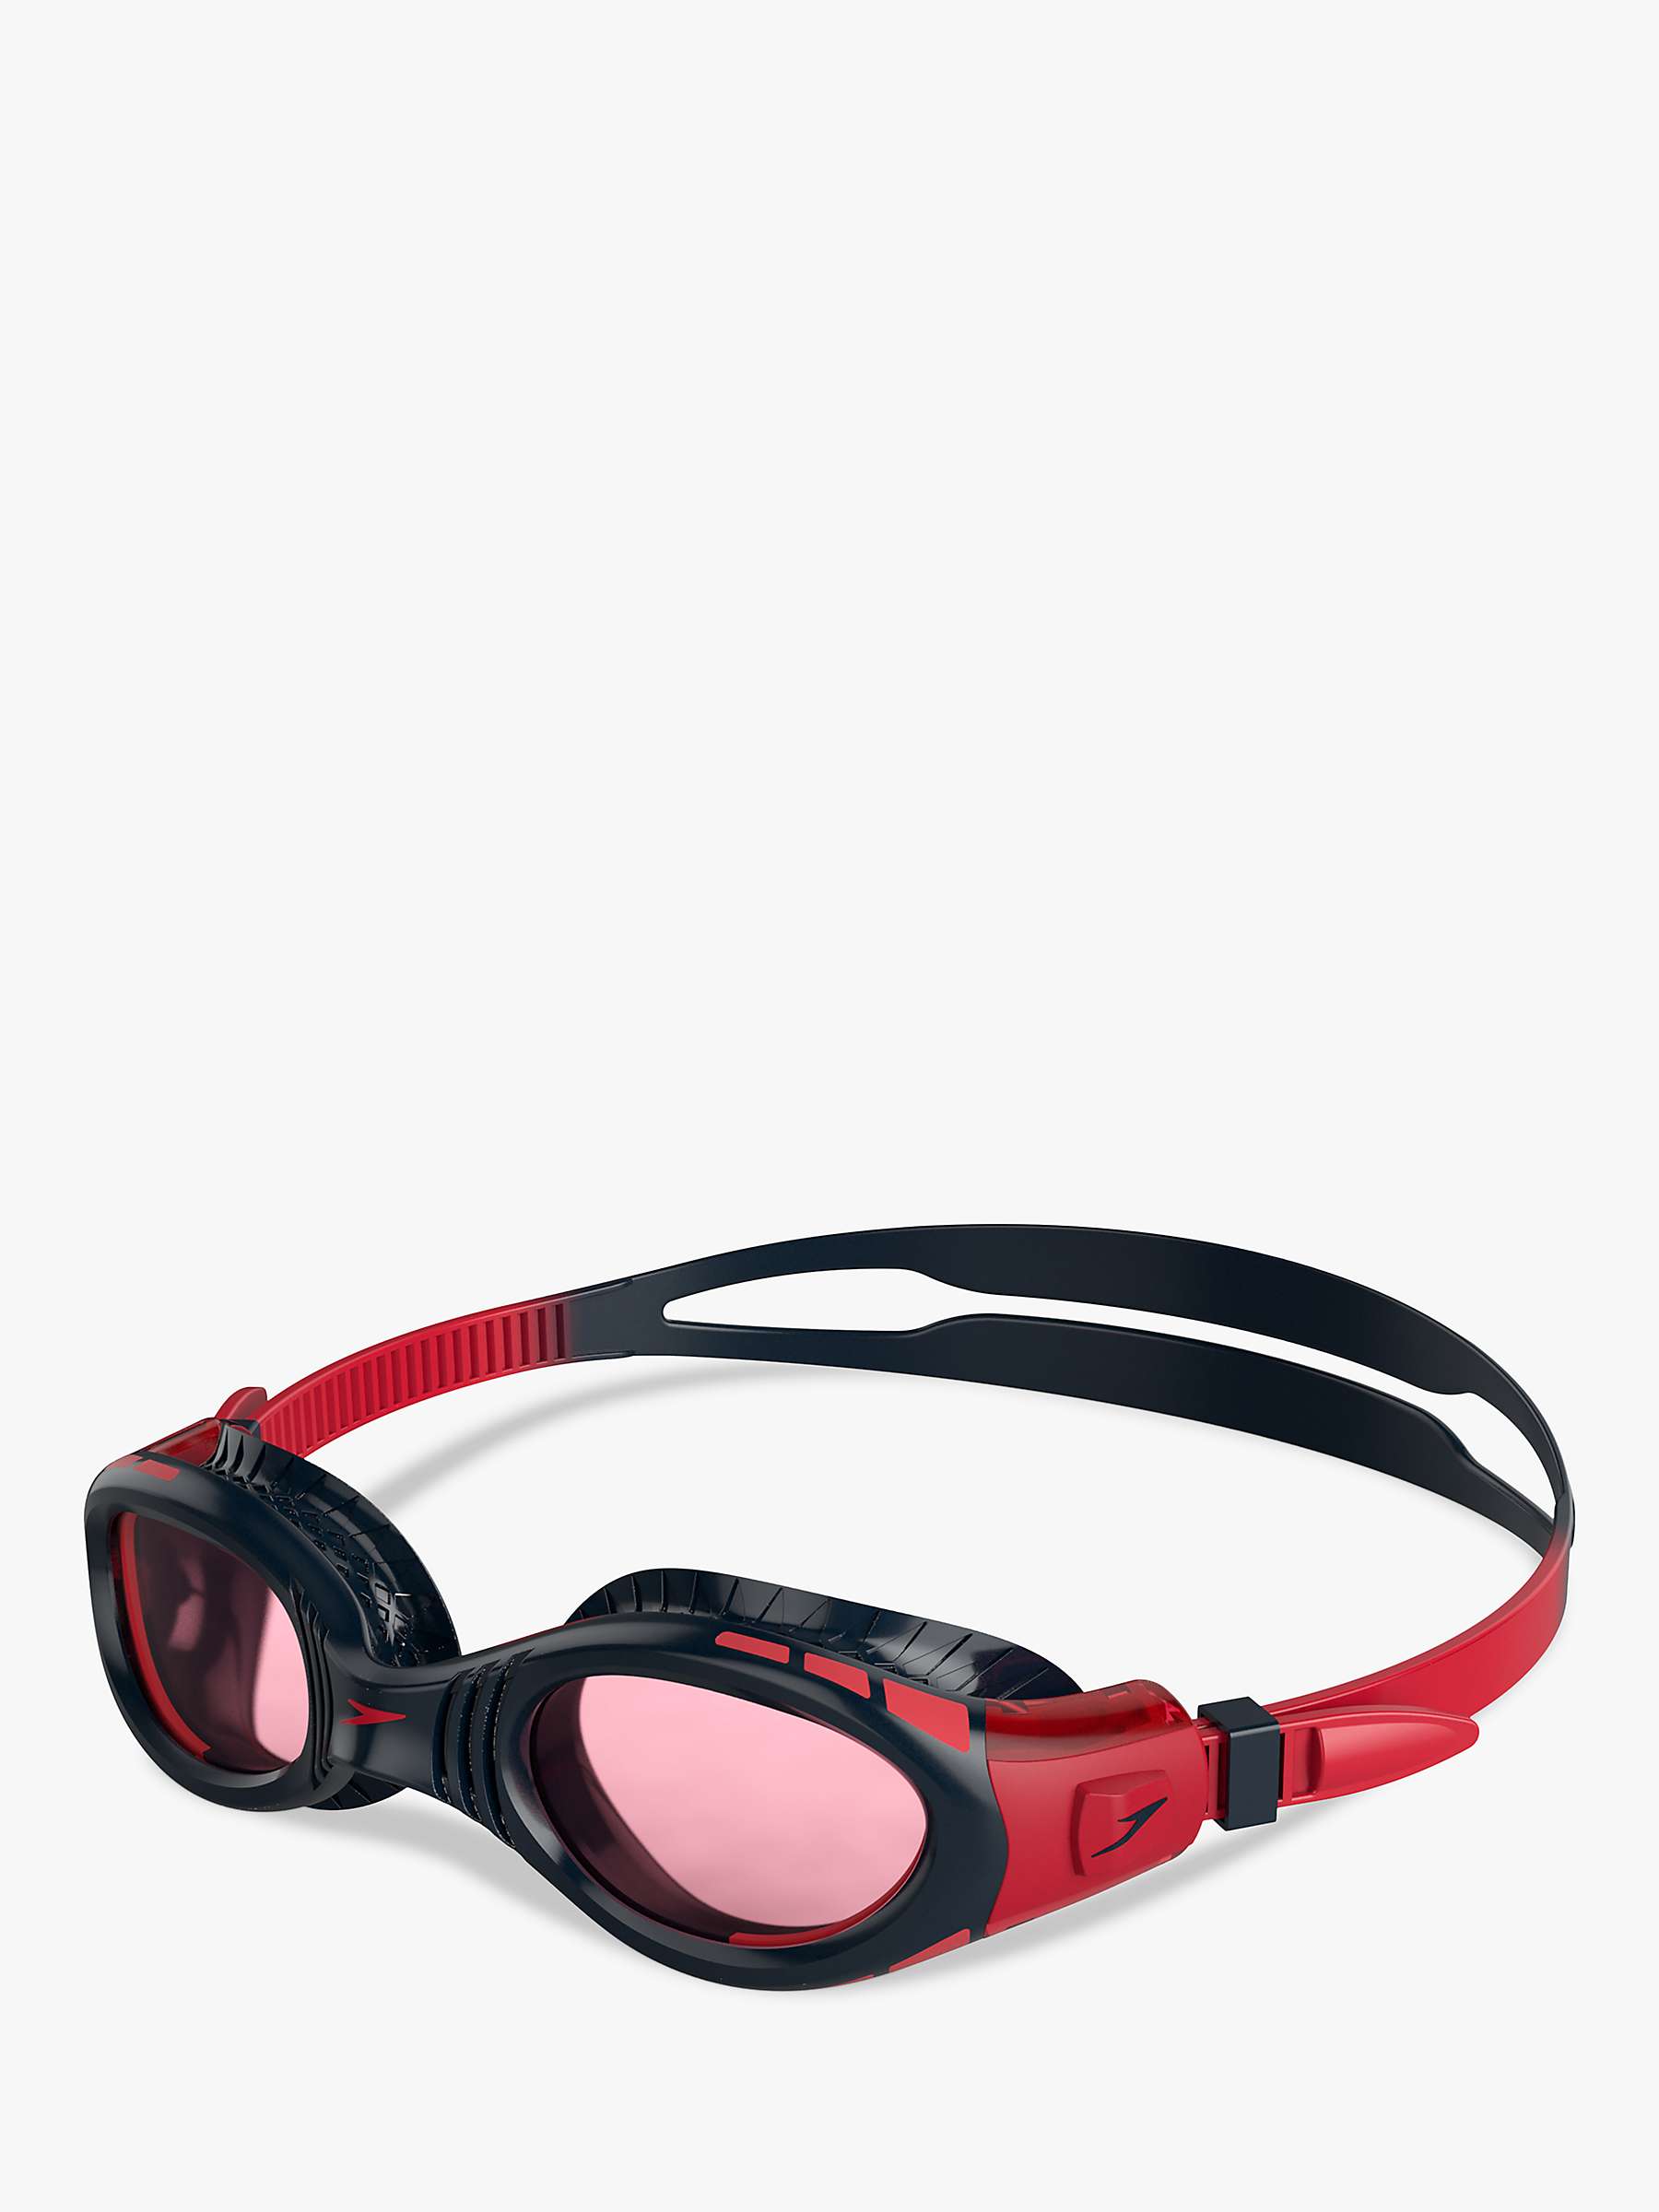 Buy Speedo Junior Futura Biofuse Flexiseal Swimming Goggles, Red Mid Online at johnlewis.com